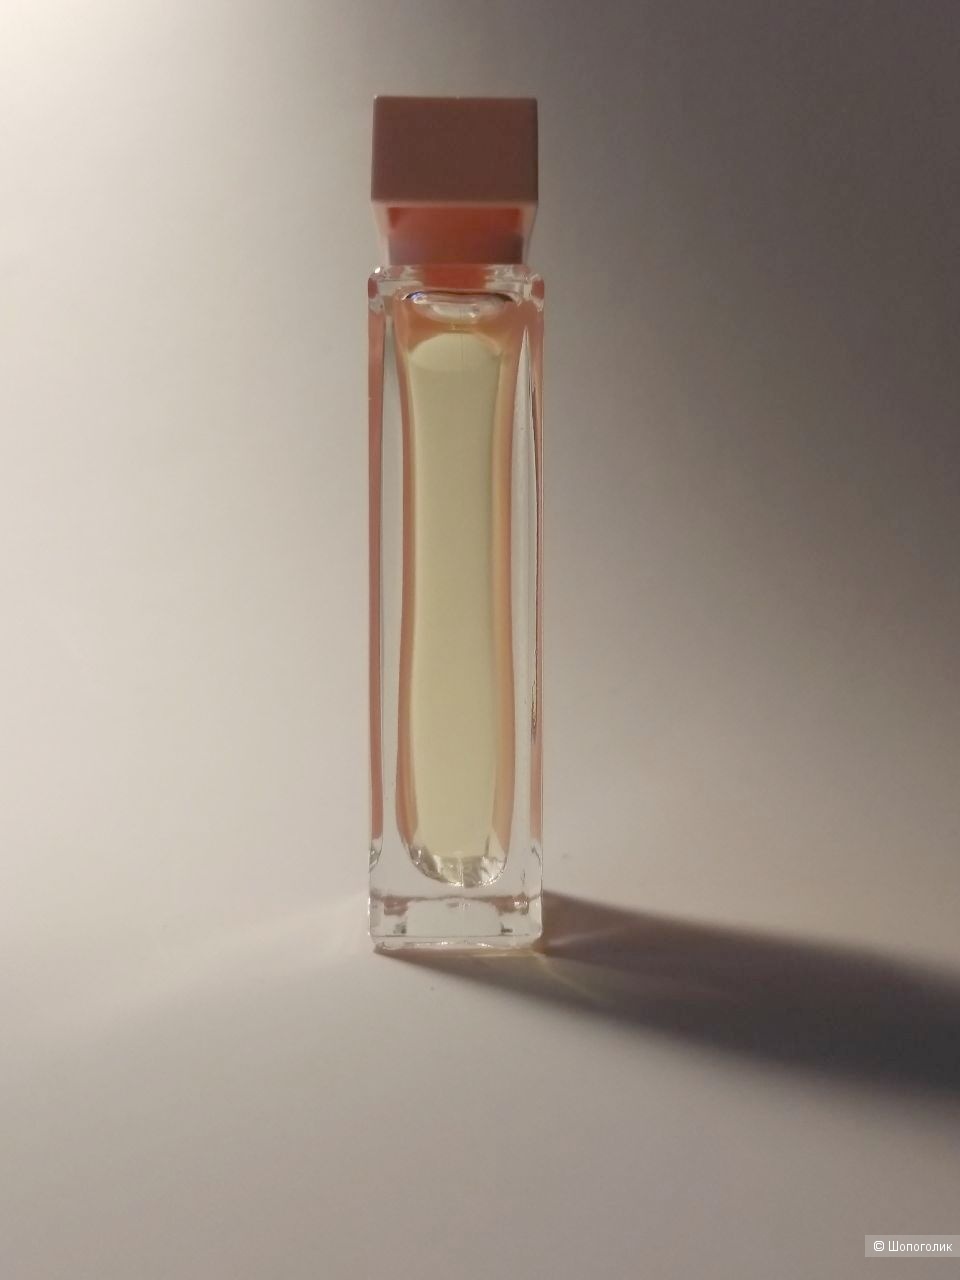 Narciso Rodriguez for Her Eau de Parfum, 7.5 мл